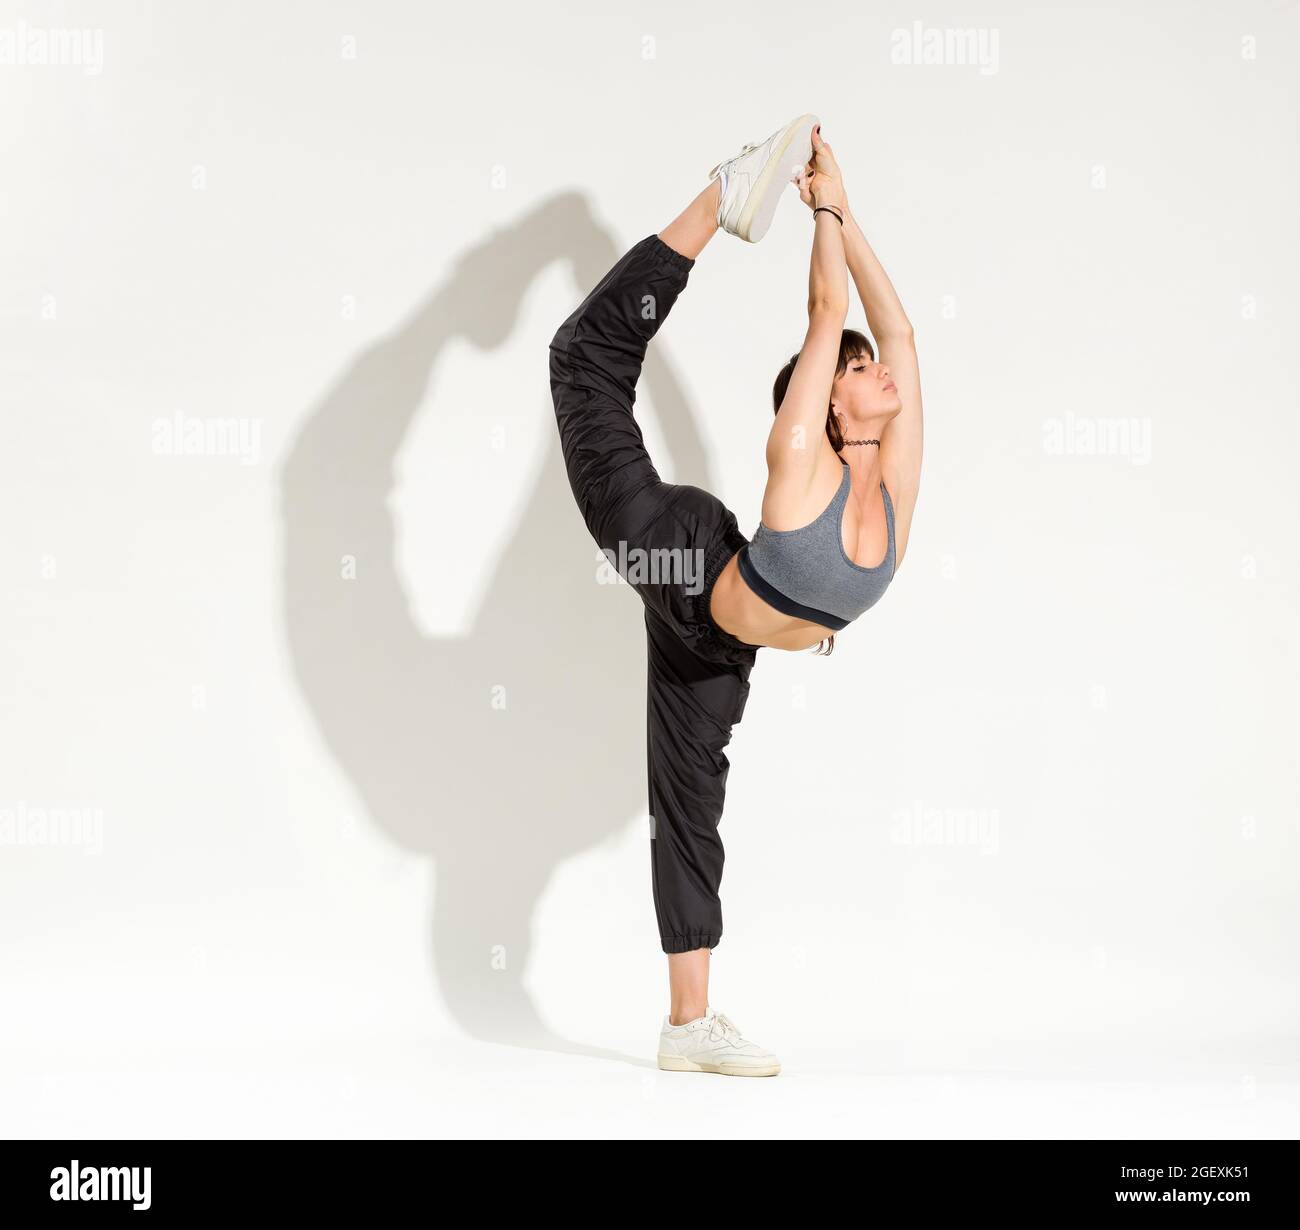 Fit athletische schöne junge Frau trägt ein Hip-Hop-Outfit tun eine Biellman Figur Skating Pose balanciert auf einem Bein, während sich bis sie zu berühren Stockfoto